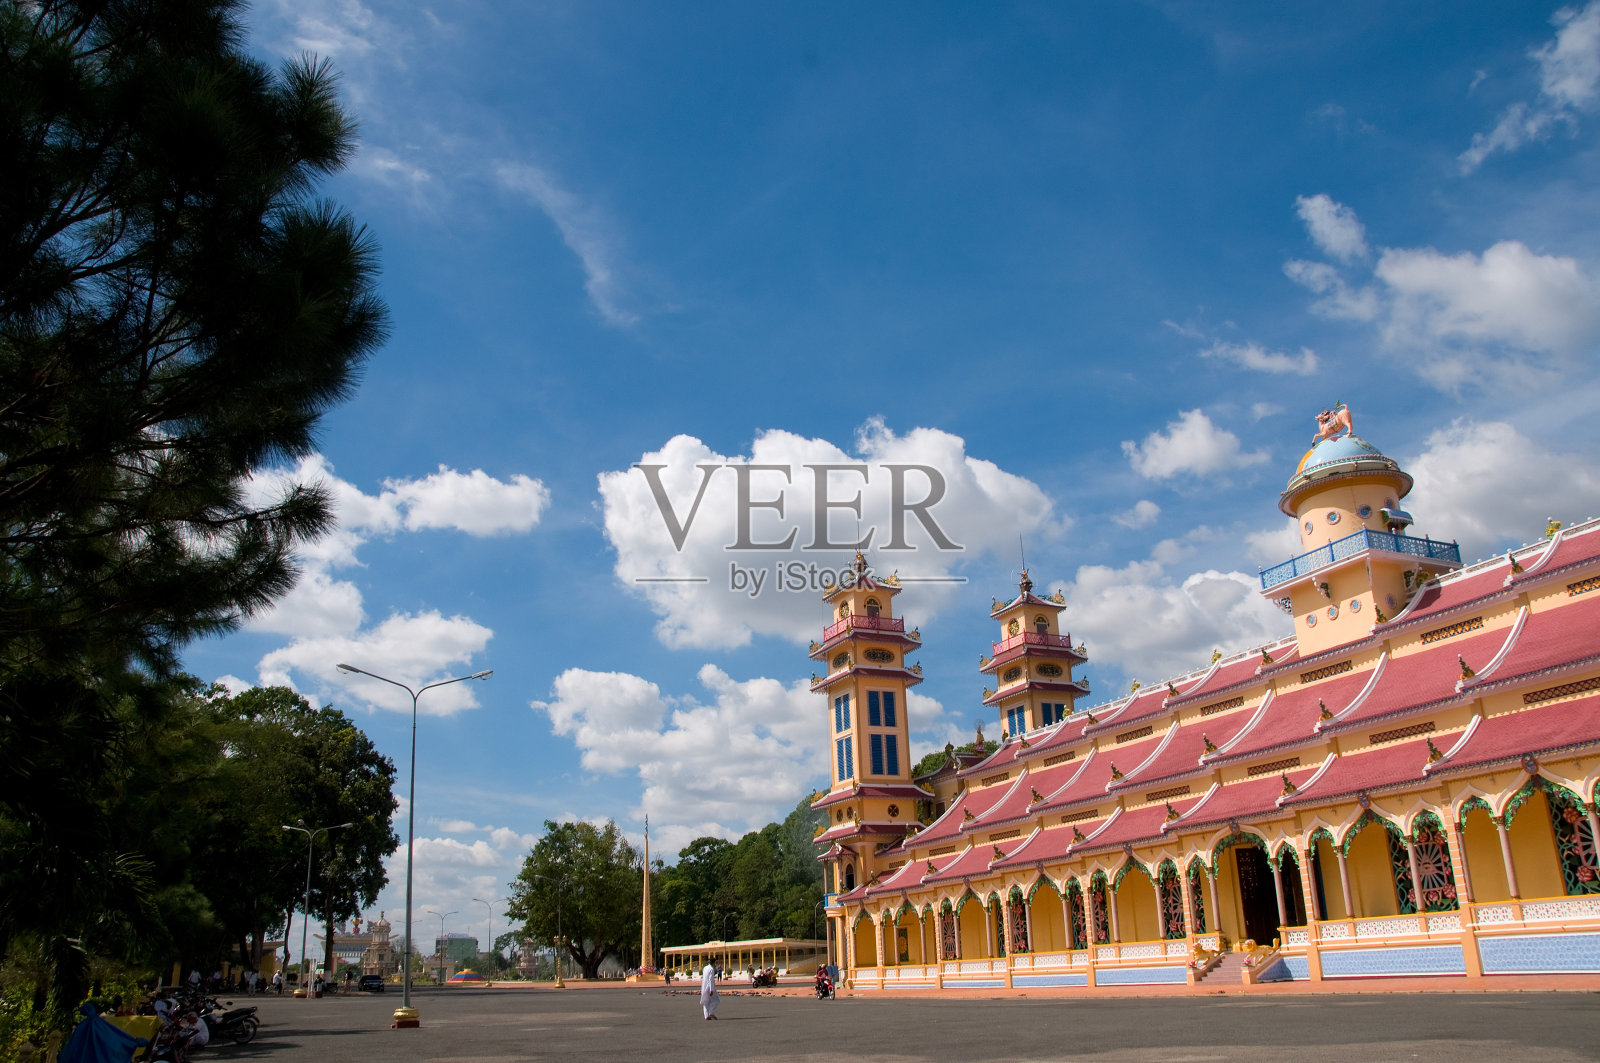 越南胡志明市附近的大宁寺高台寺照片摄影图片